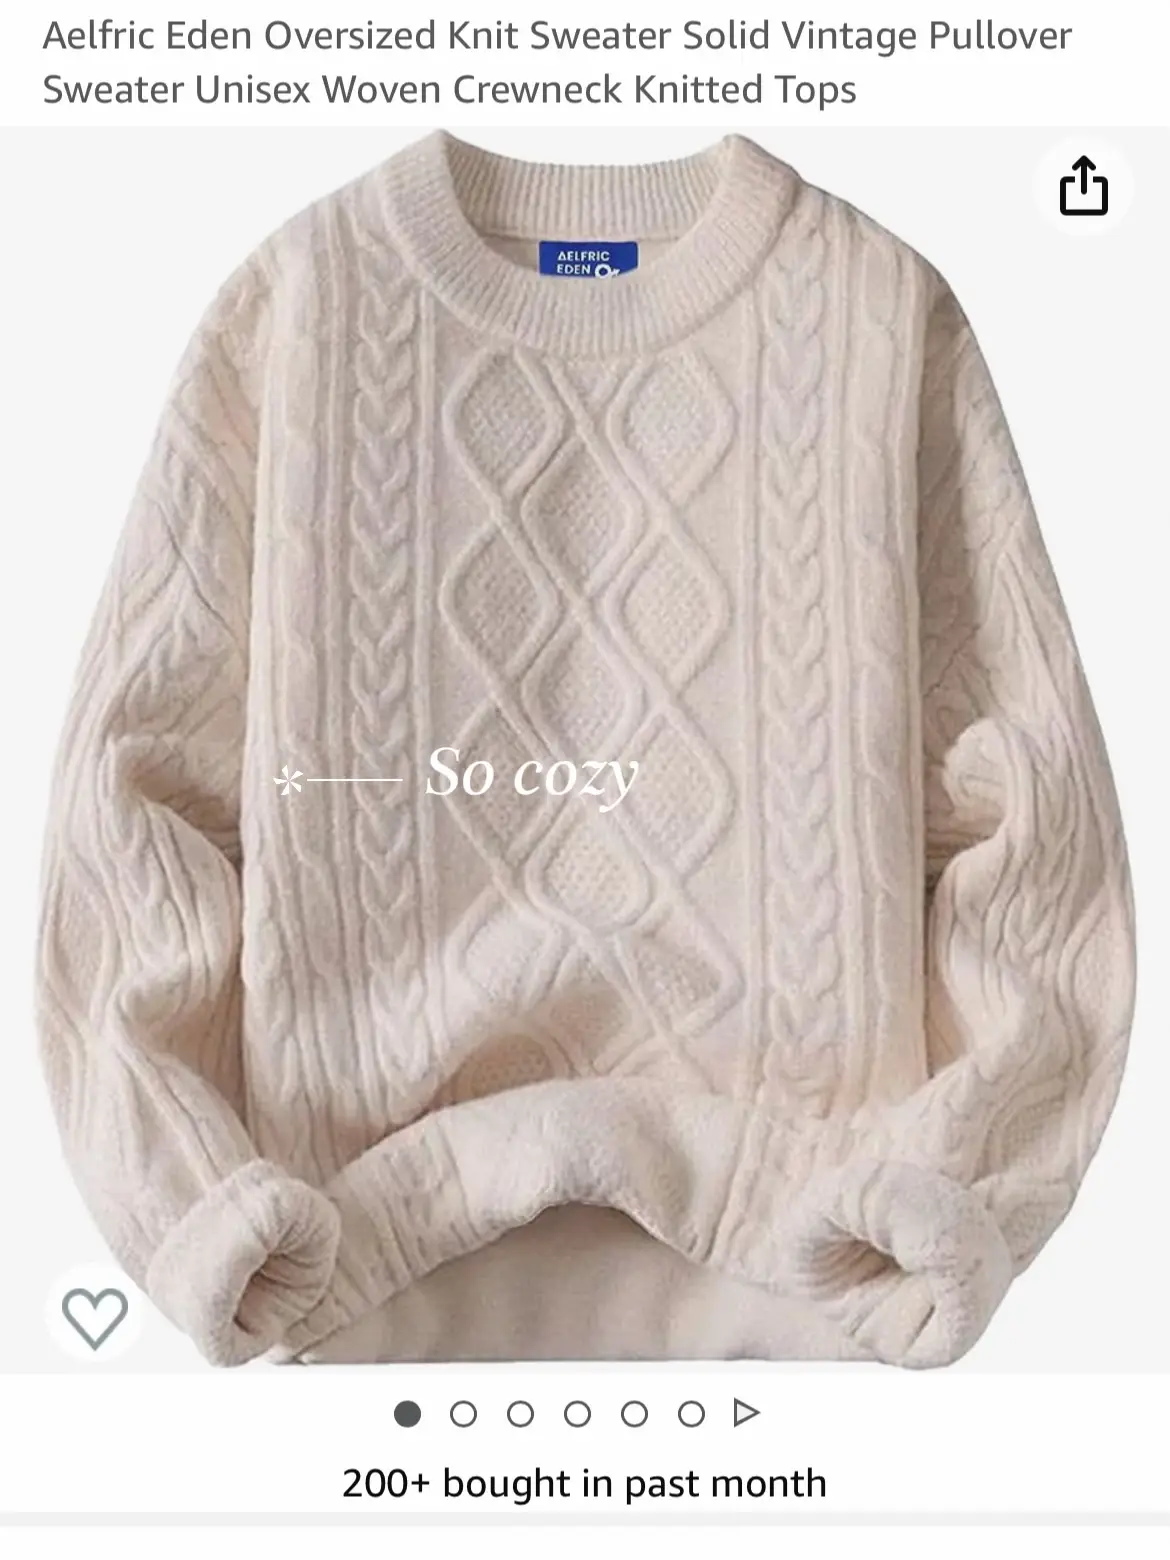 Aelfric Eden Cotton Sweater Medium